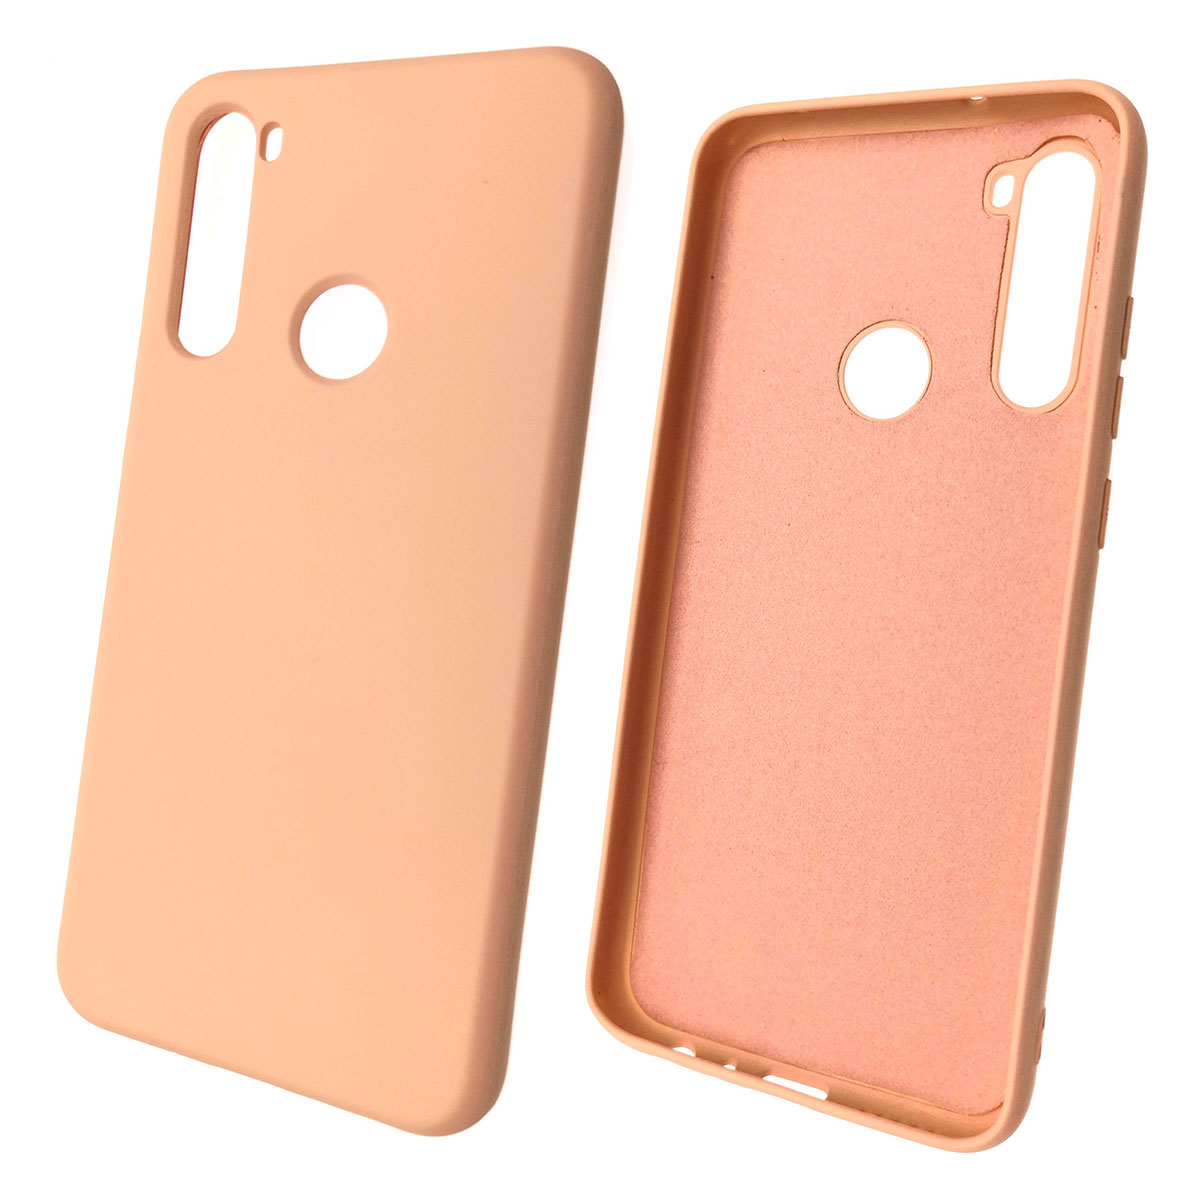 Чехол накладка для XIAOMI Redmi Note 8T, силикон, цвет розовый песок.